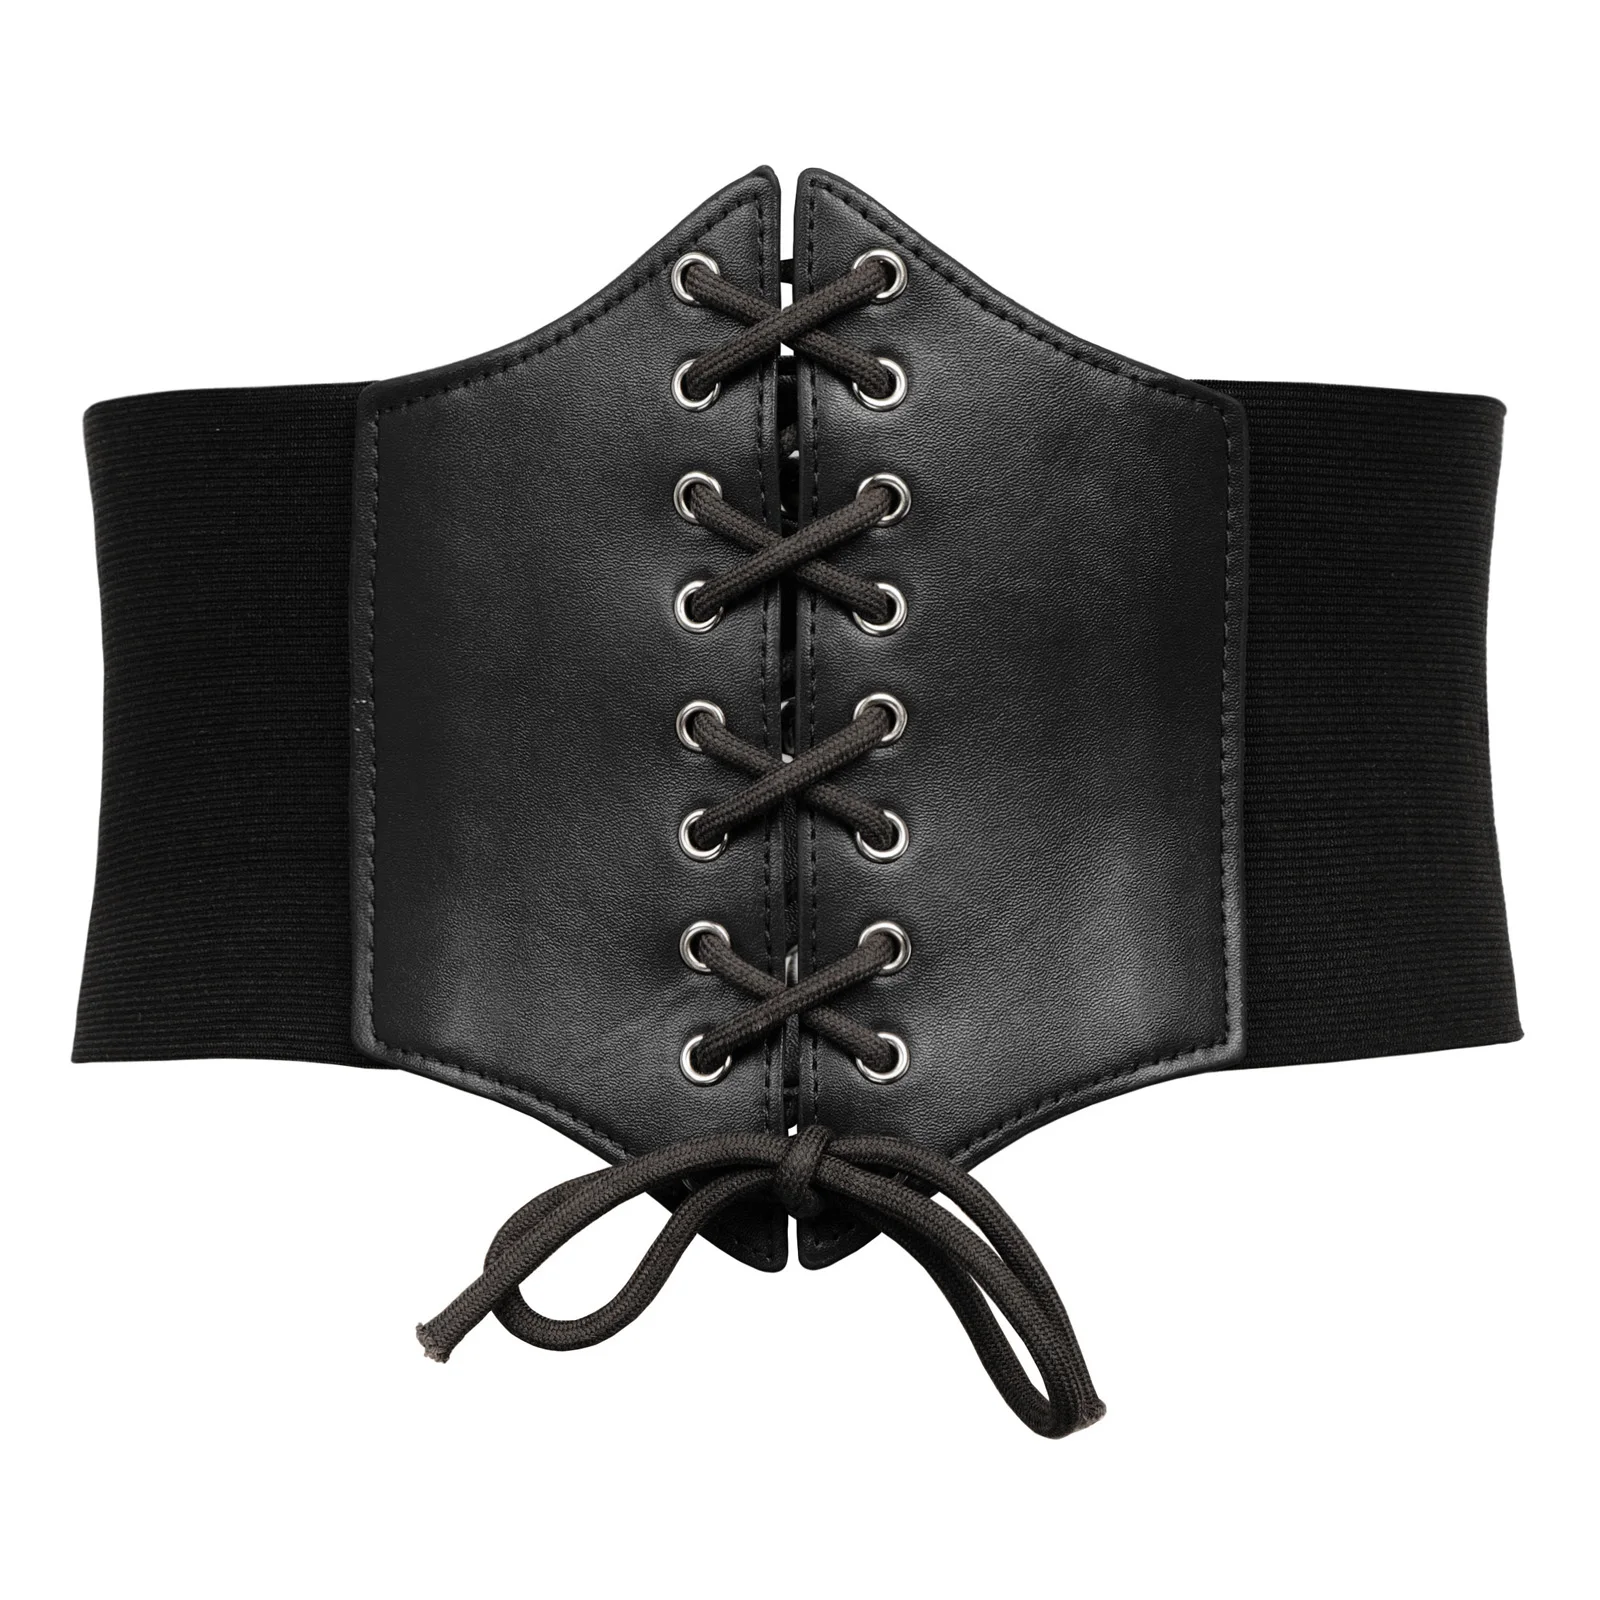 Плюс размер 3XL корсет пояс для женщин Мода шнуровка PU кожаный роскошный пояс Cinch корсет со стяжками широкий пояс с пряжкой пояс - Цвет: Black